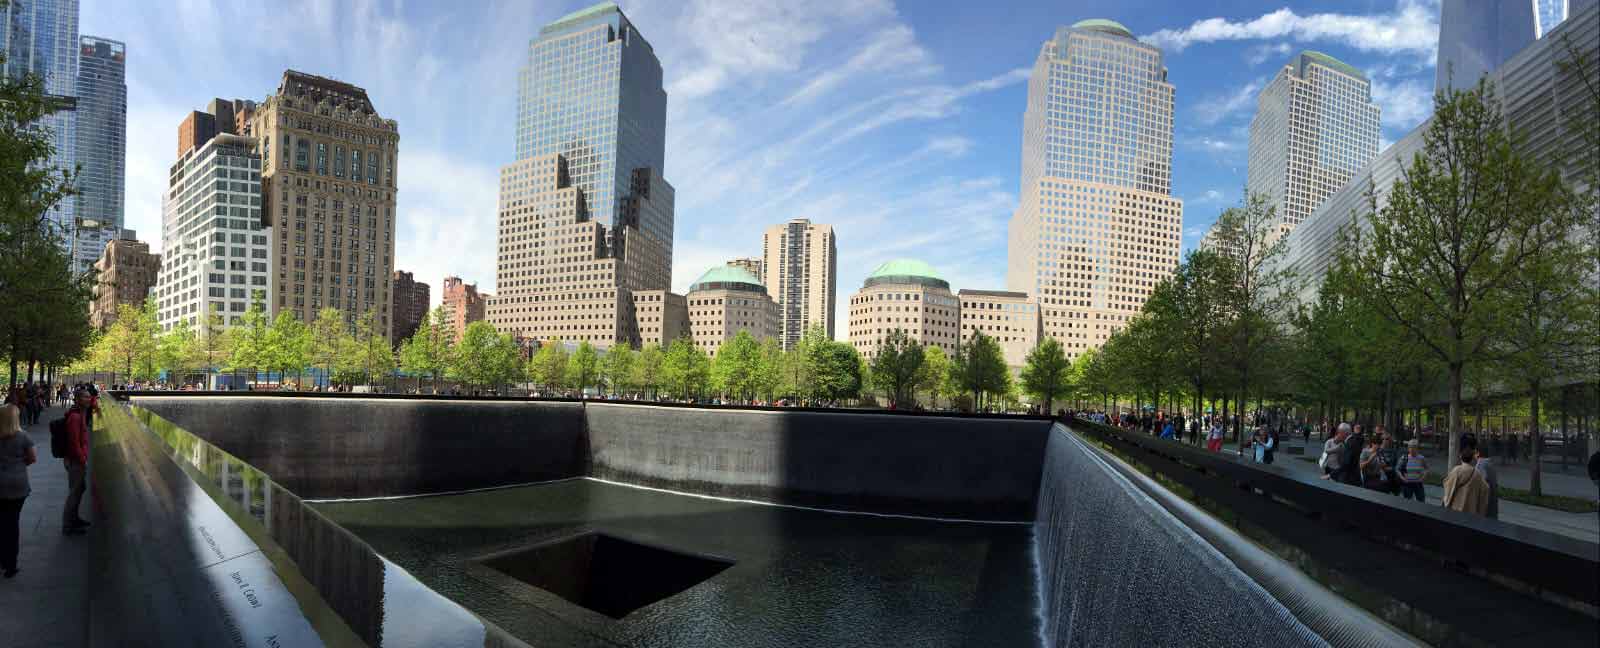 Das Foto zeigt das 9/11 Memorial am Ground Zero in New York